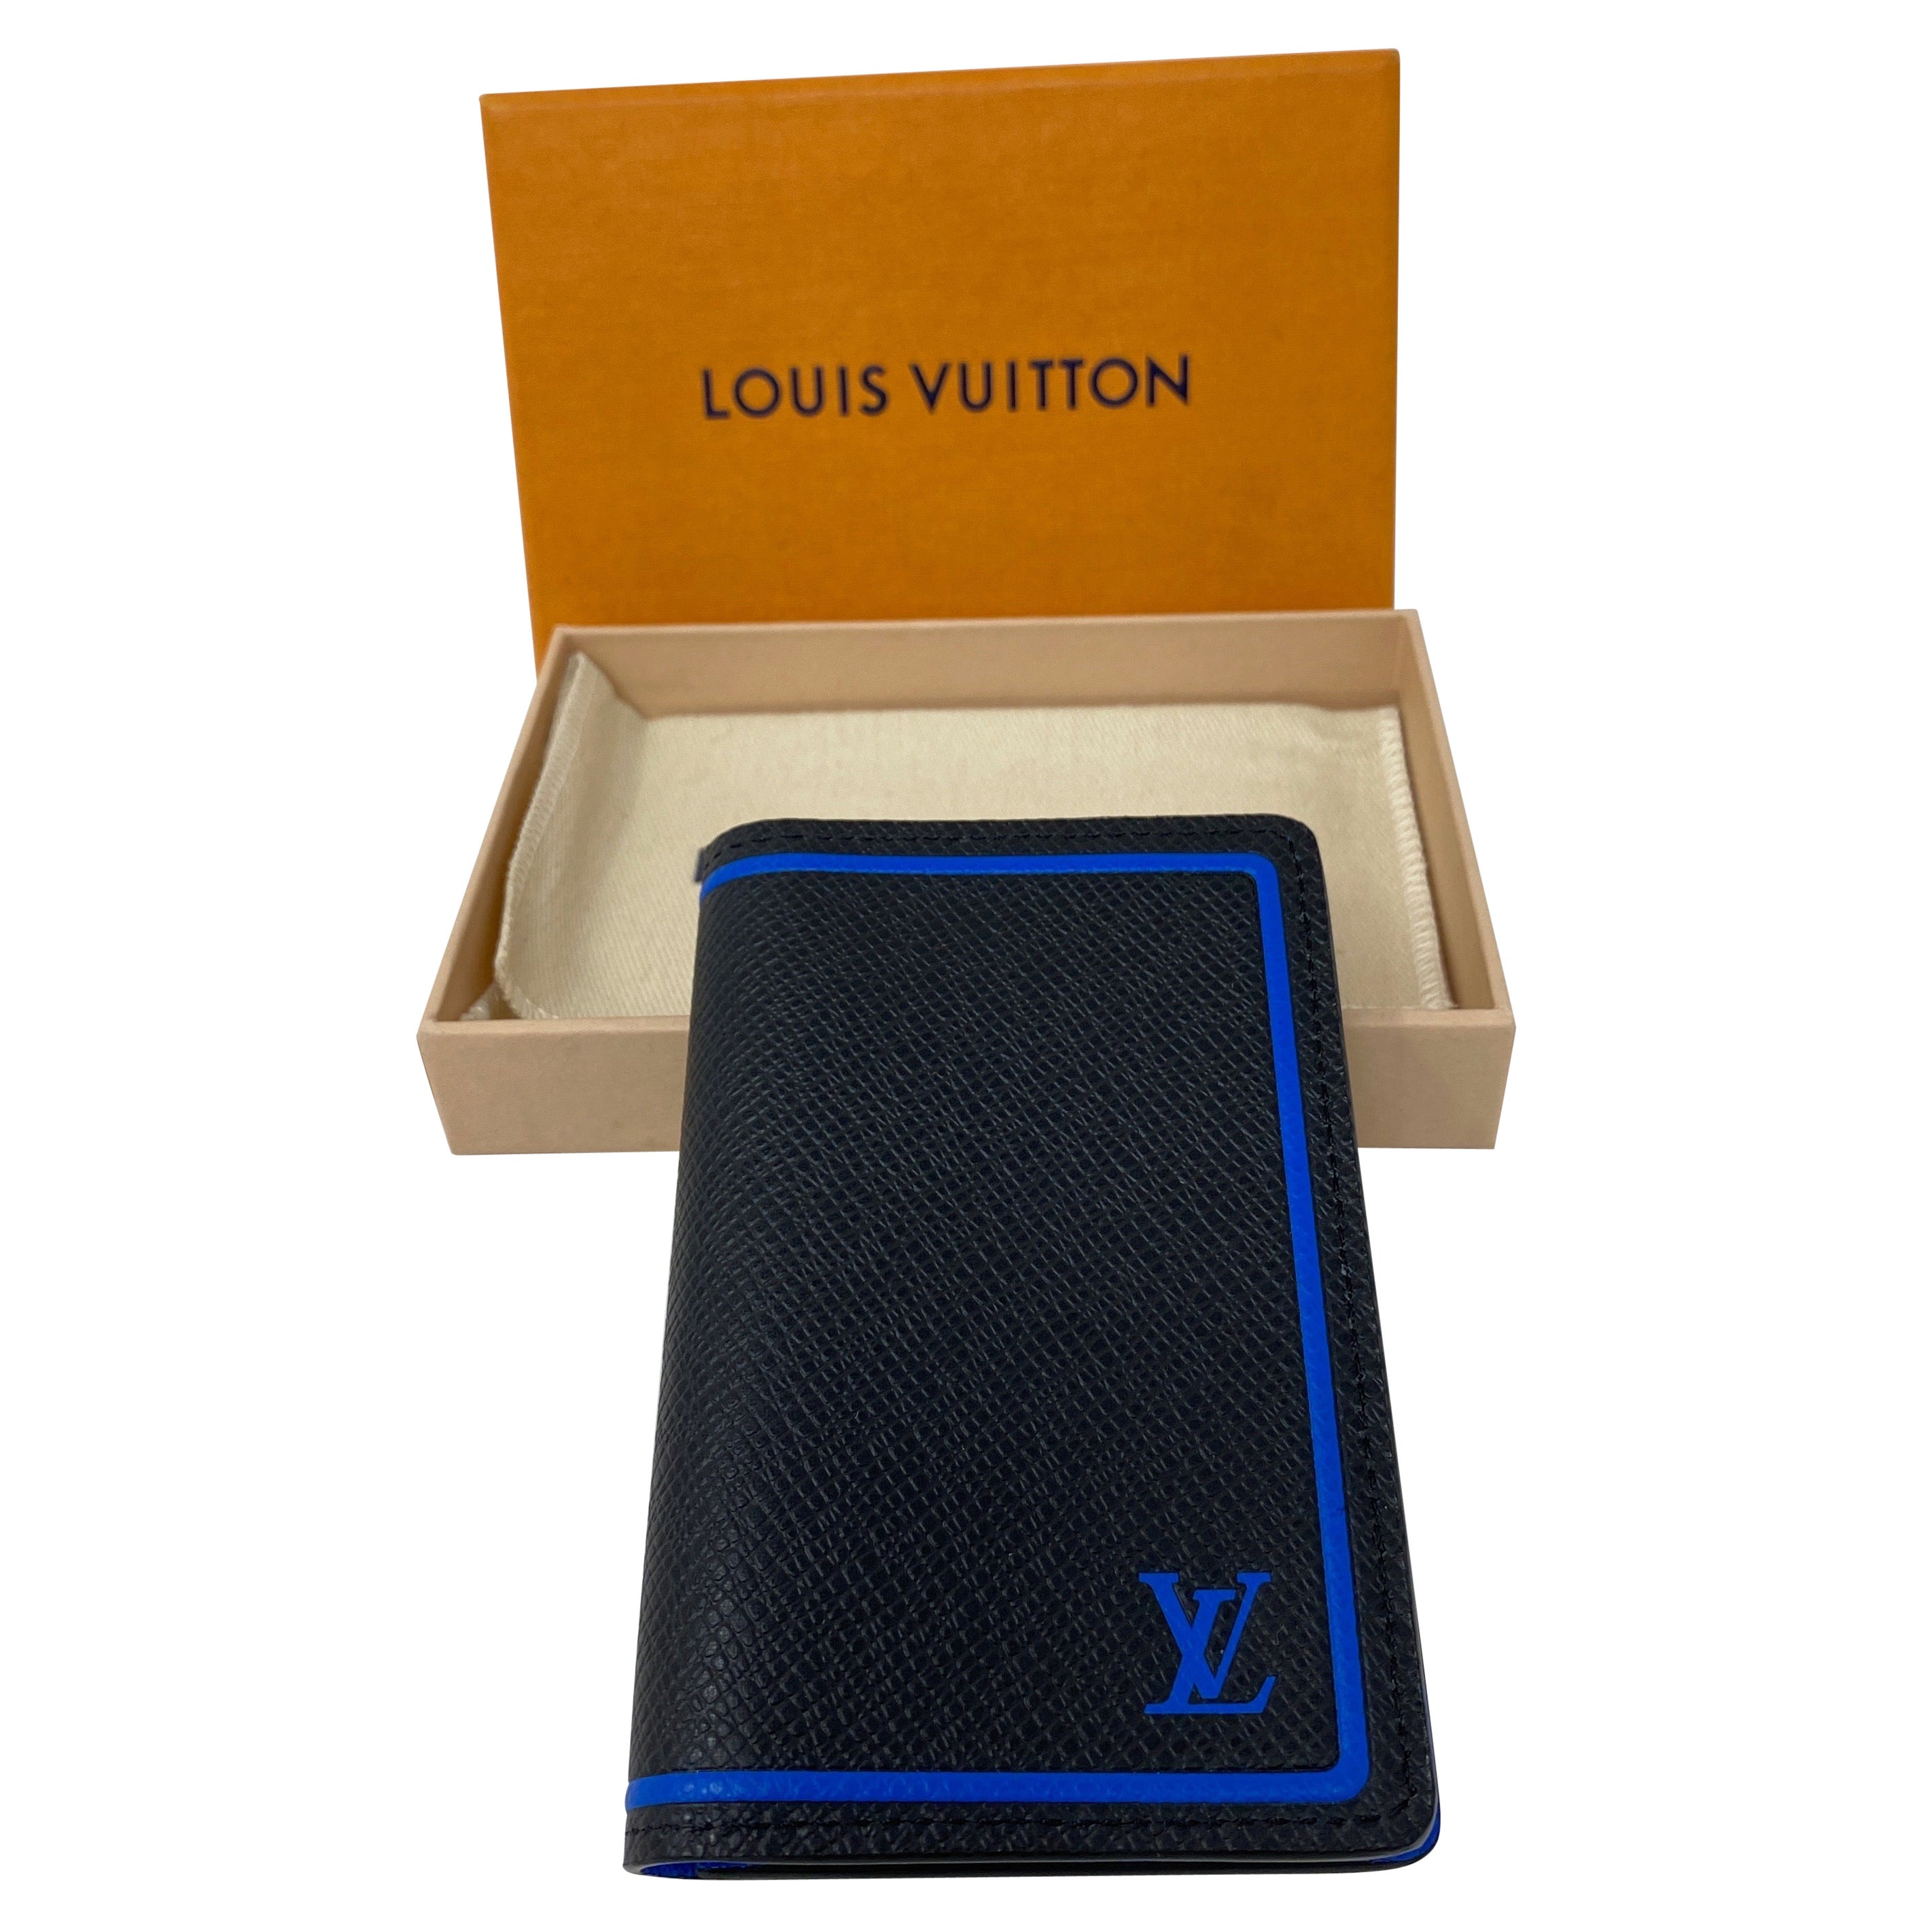 Louis Vuitton Men's Wallets & Card Holders | BUYMA